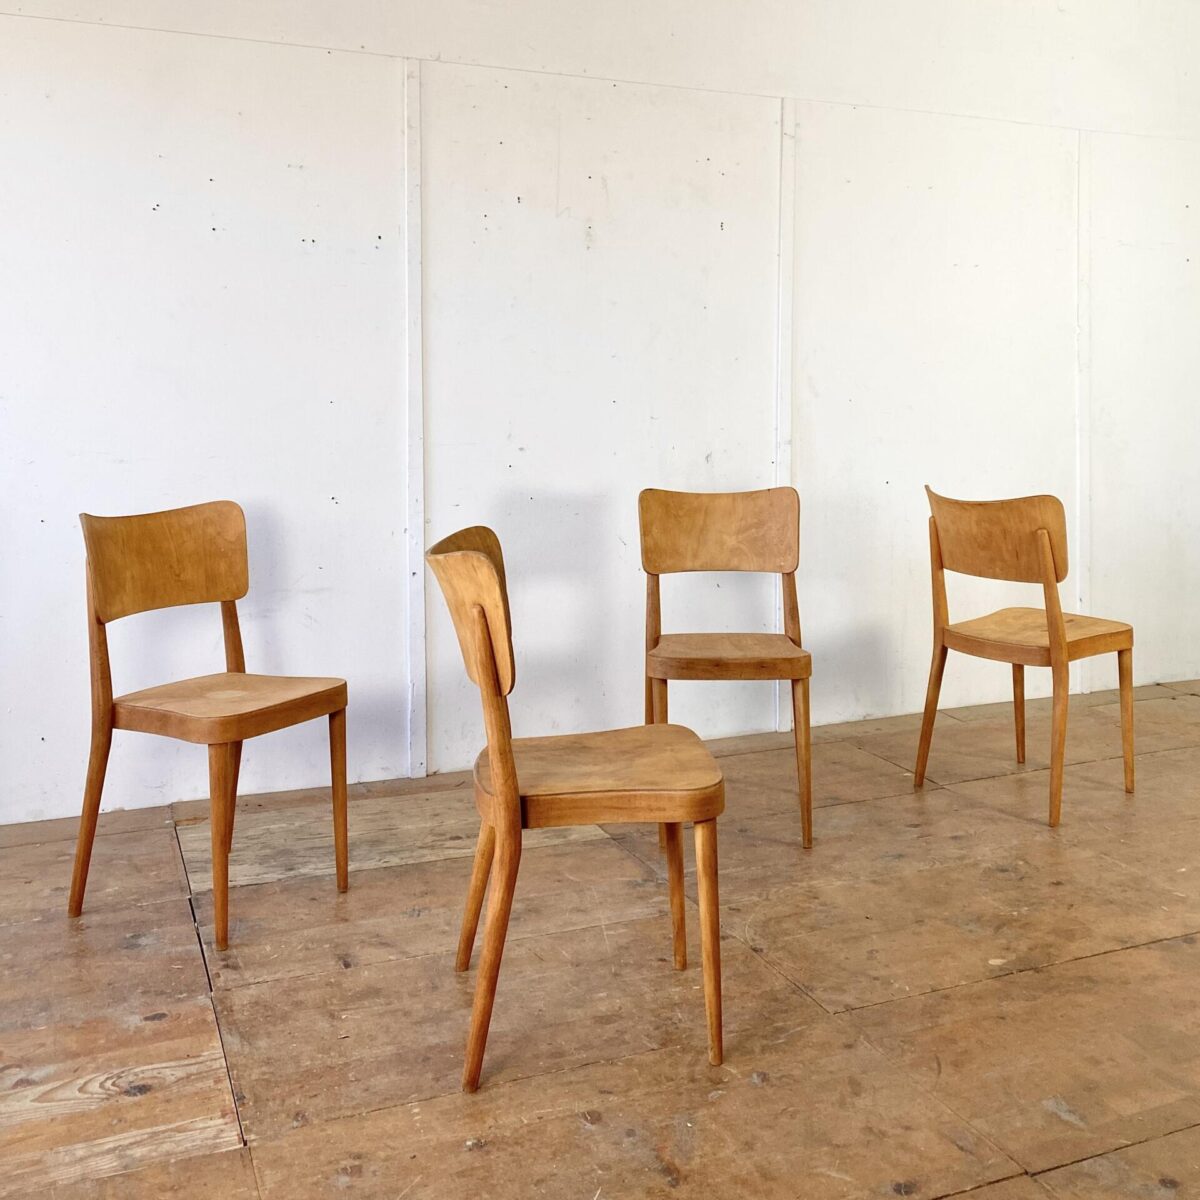 Deuxieme.shop Max bill Stühle. 4er Set Horgen Glarus Stühle von 1958. Die Stühle sind in stabilem restaurierten Zustand, die Holz Oberflächen sind geschliffen und geölt. Sitz und Lehne sind aus Sperrholz formverleimt, die restlichen Teile aus Buche Vollholz Dampfgebogen. Die konischen Rundbeine und die Rückenlehne wurden später beim Max Bill Kreuzzargen Stuhl wieder aufgegriffen. Die Stühle sind stapelbar, und werden heute noch in ähnlicher Form ähnlich produziert, mit dem Namen Stapel 1-680. 